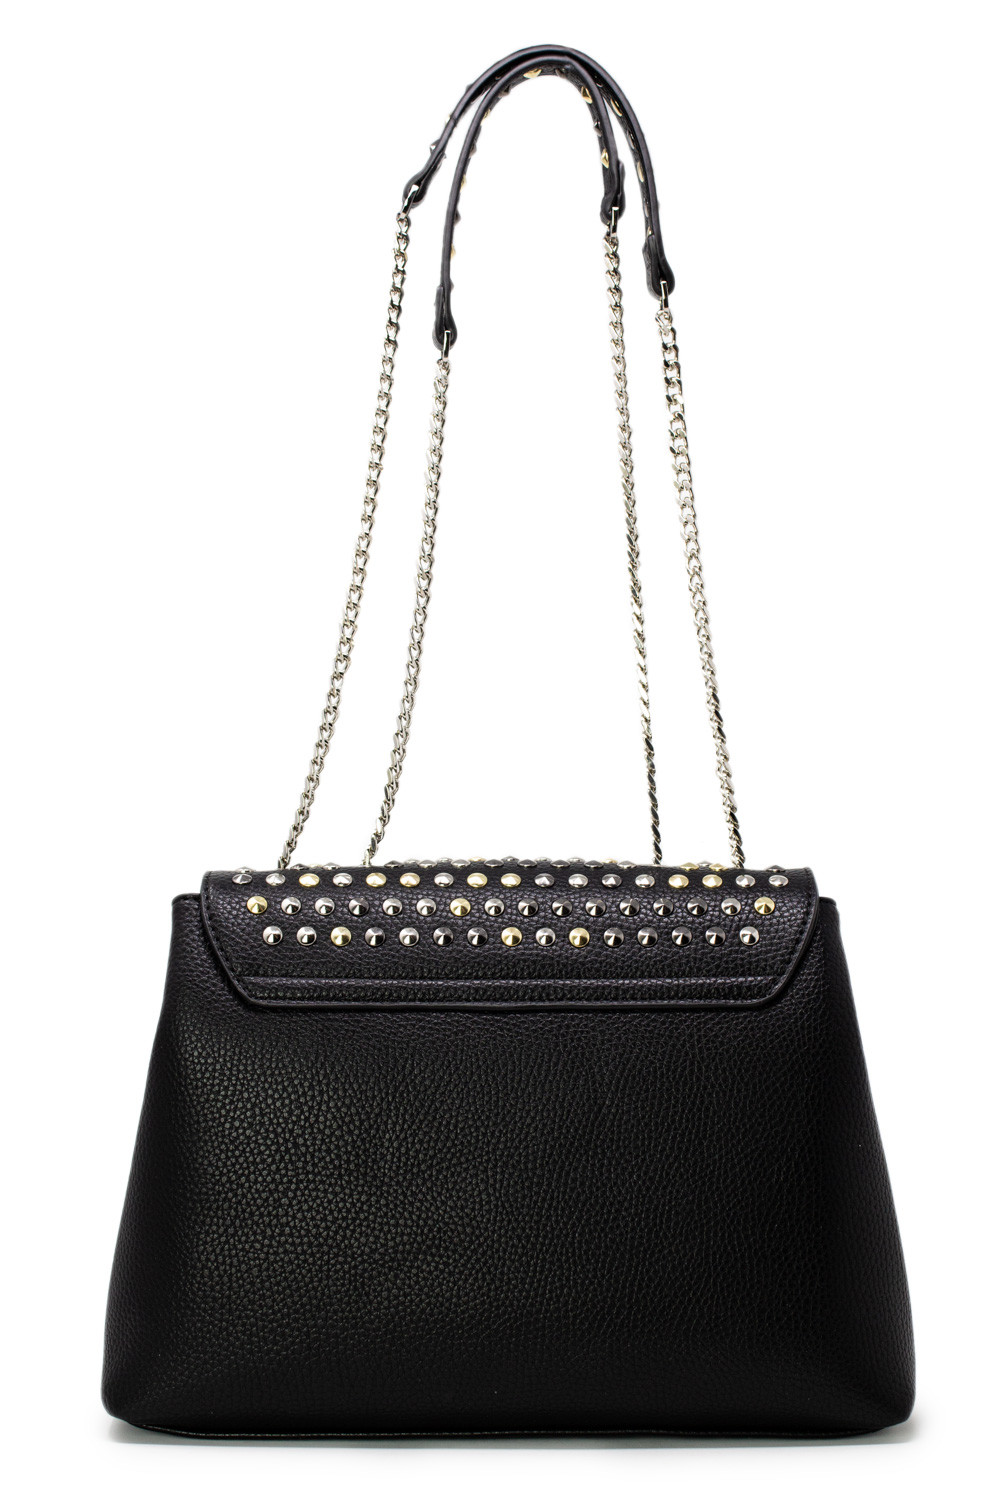 Gio Cellini Black Women's Bags UNIQUE | eBay